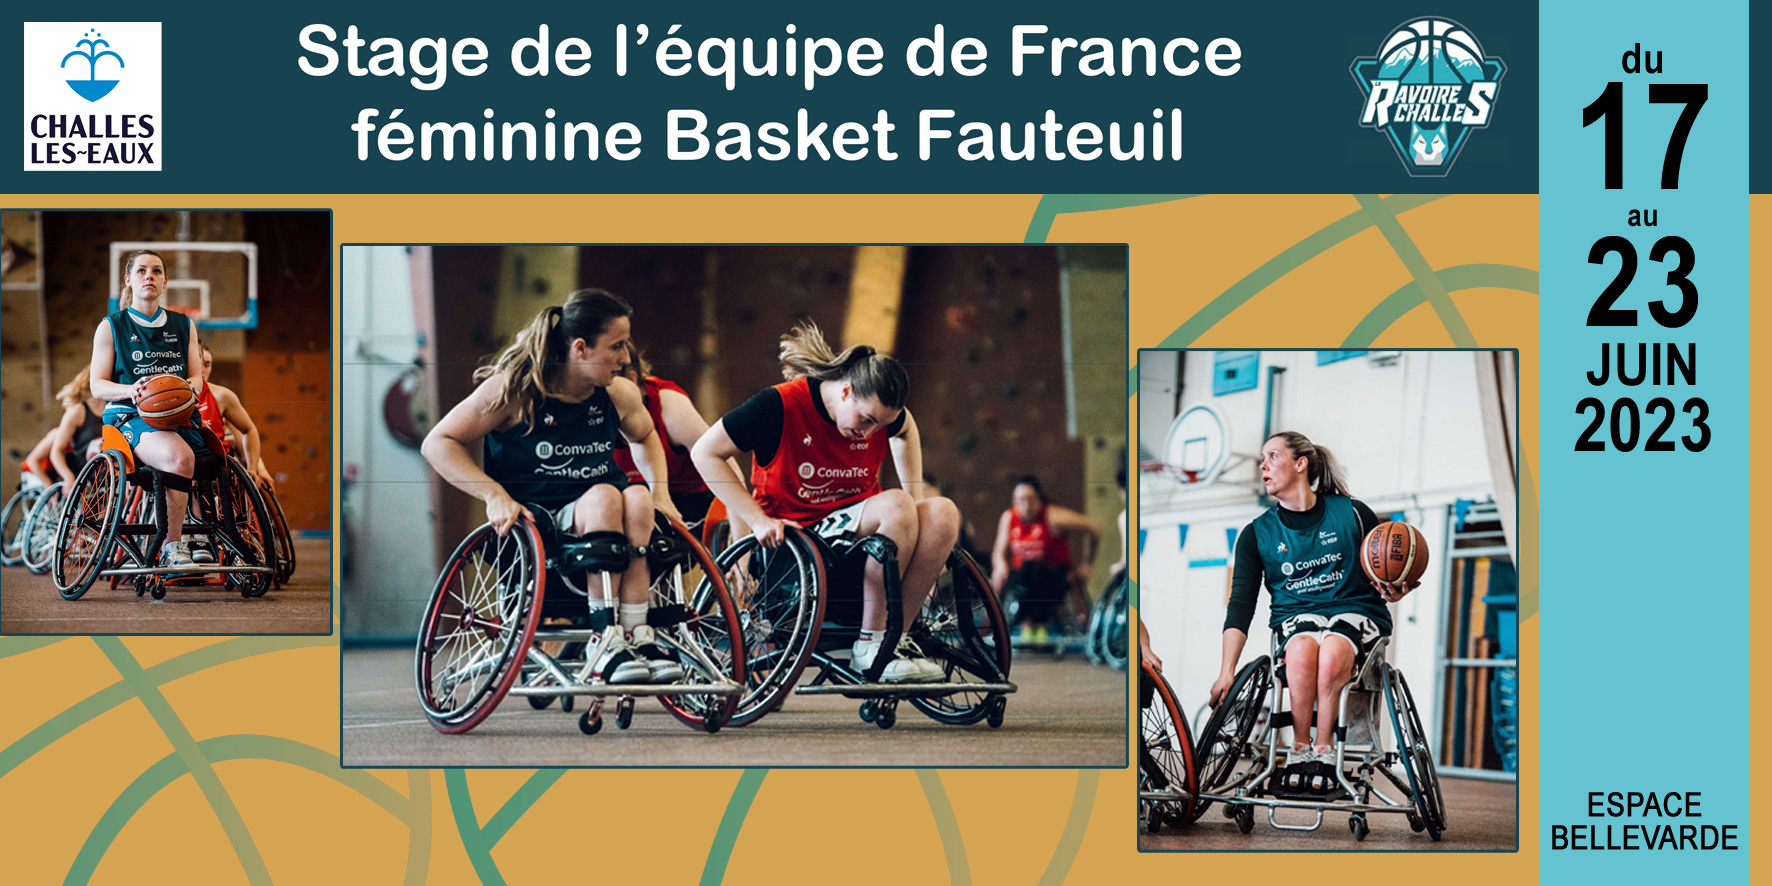 Stage de l’équipe féminine basket fauteuil à Bellevarde